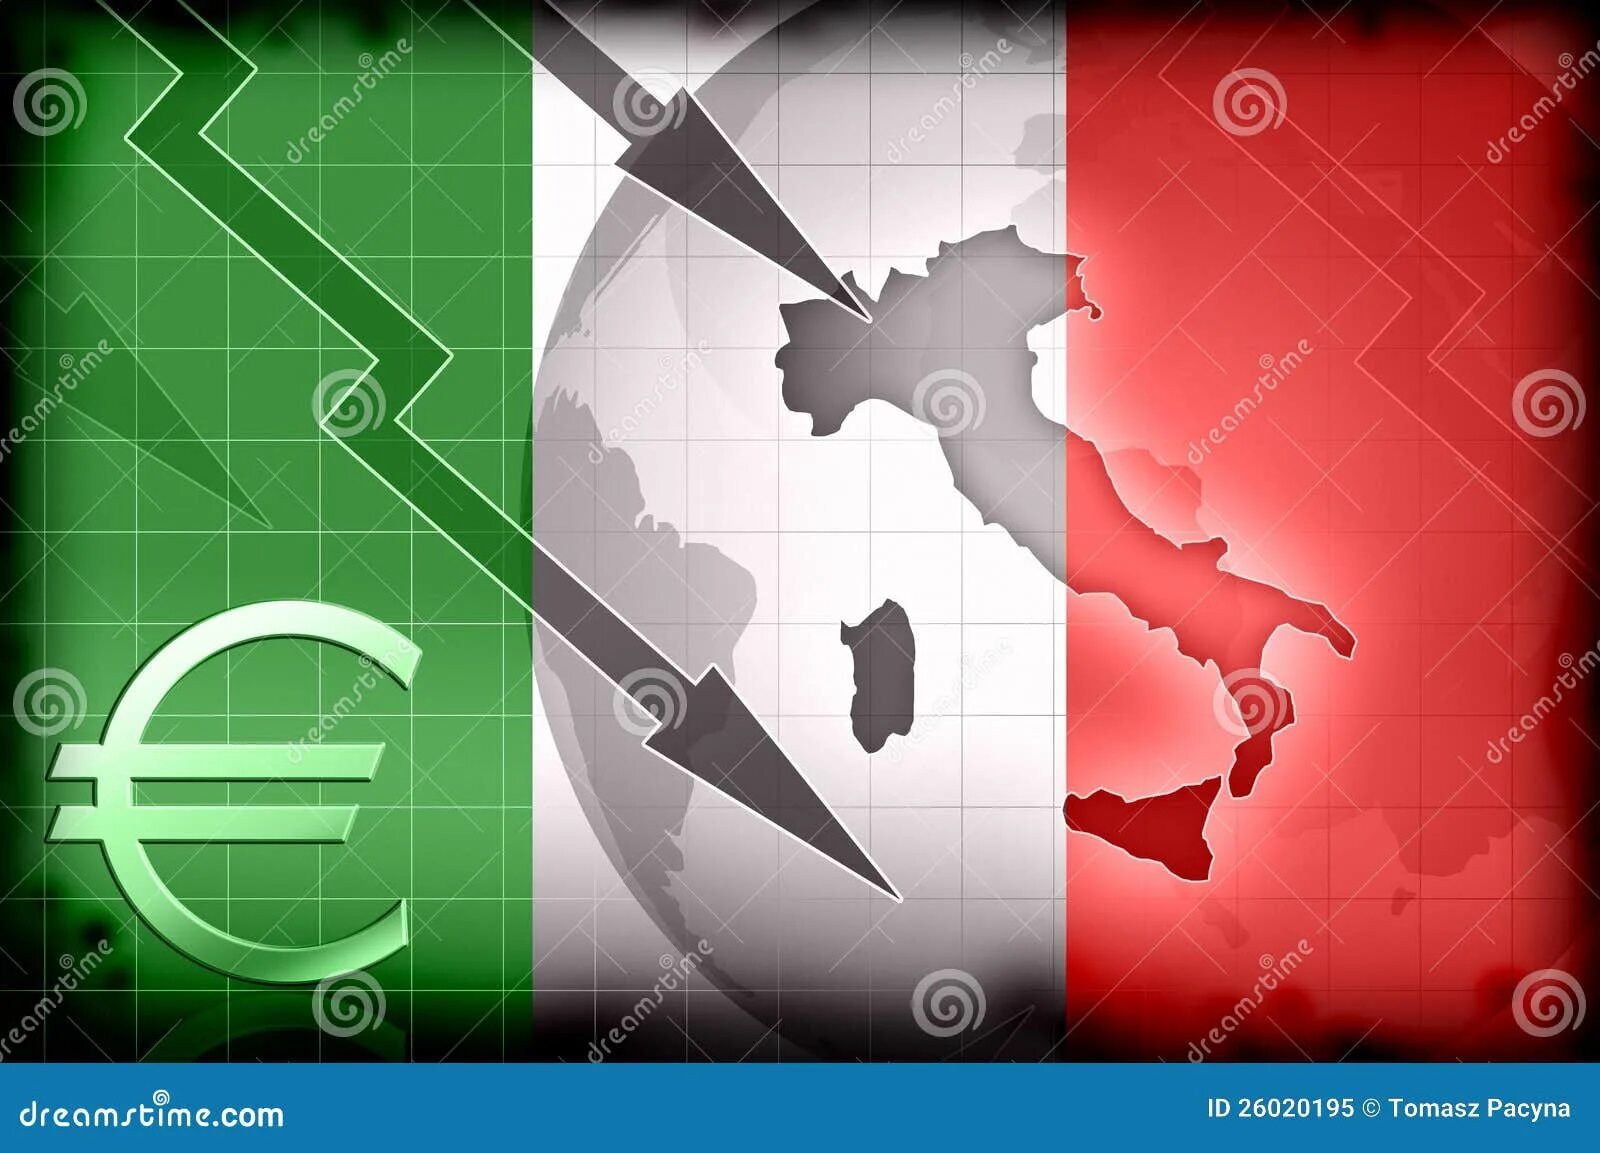 Экономика Италии. Налоговая система Италии. Экономическая ситуация в Италии. Экономический кризис в Италии.